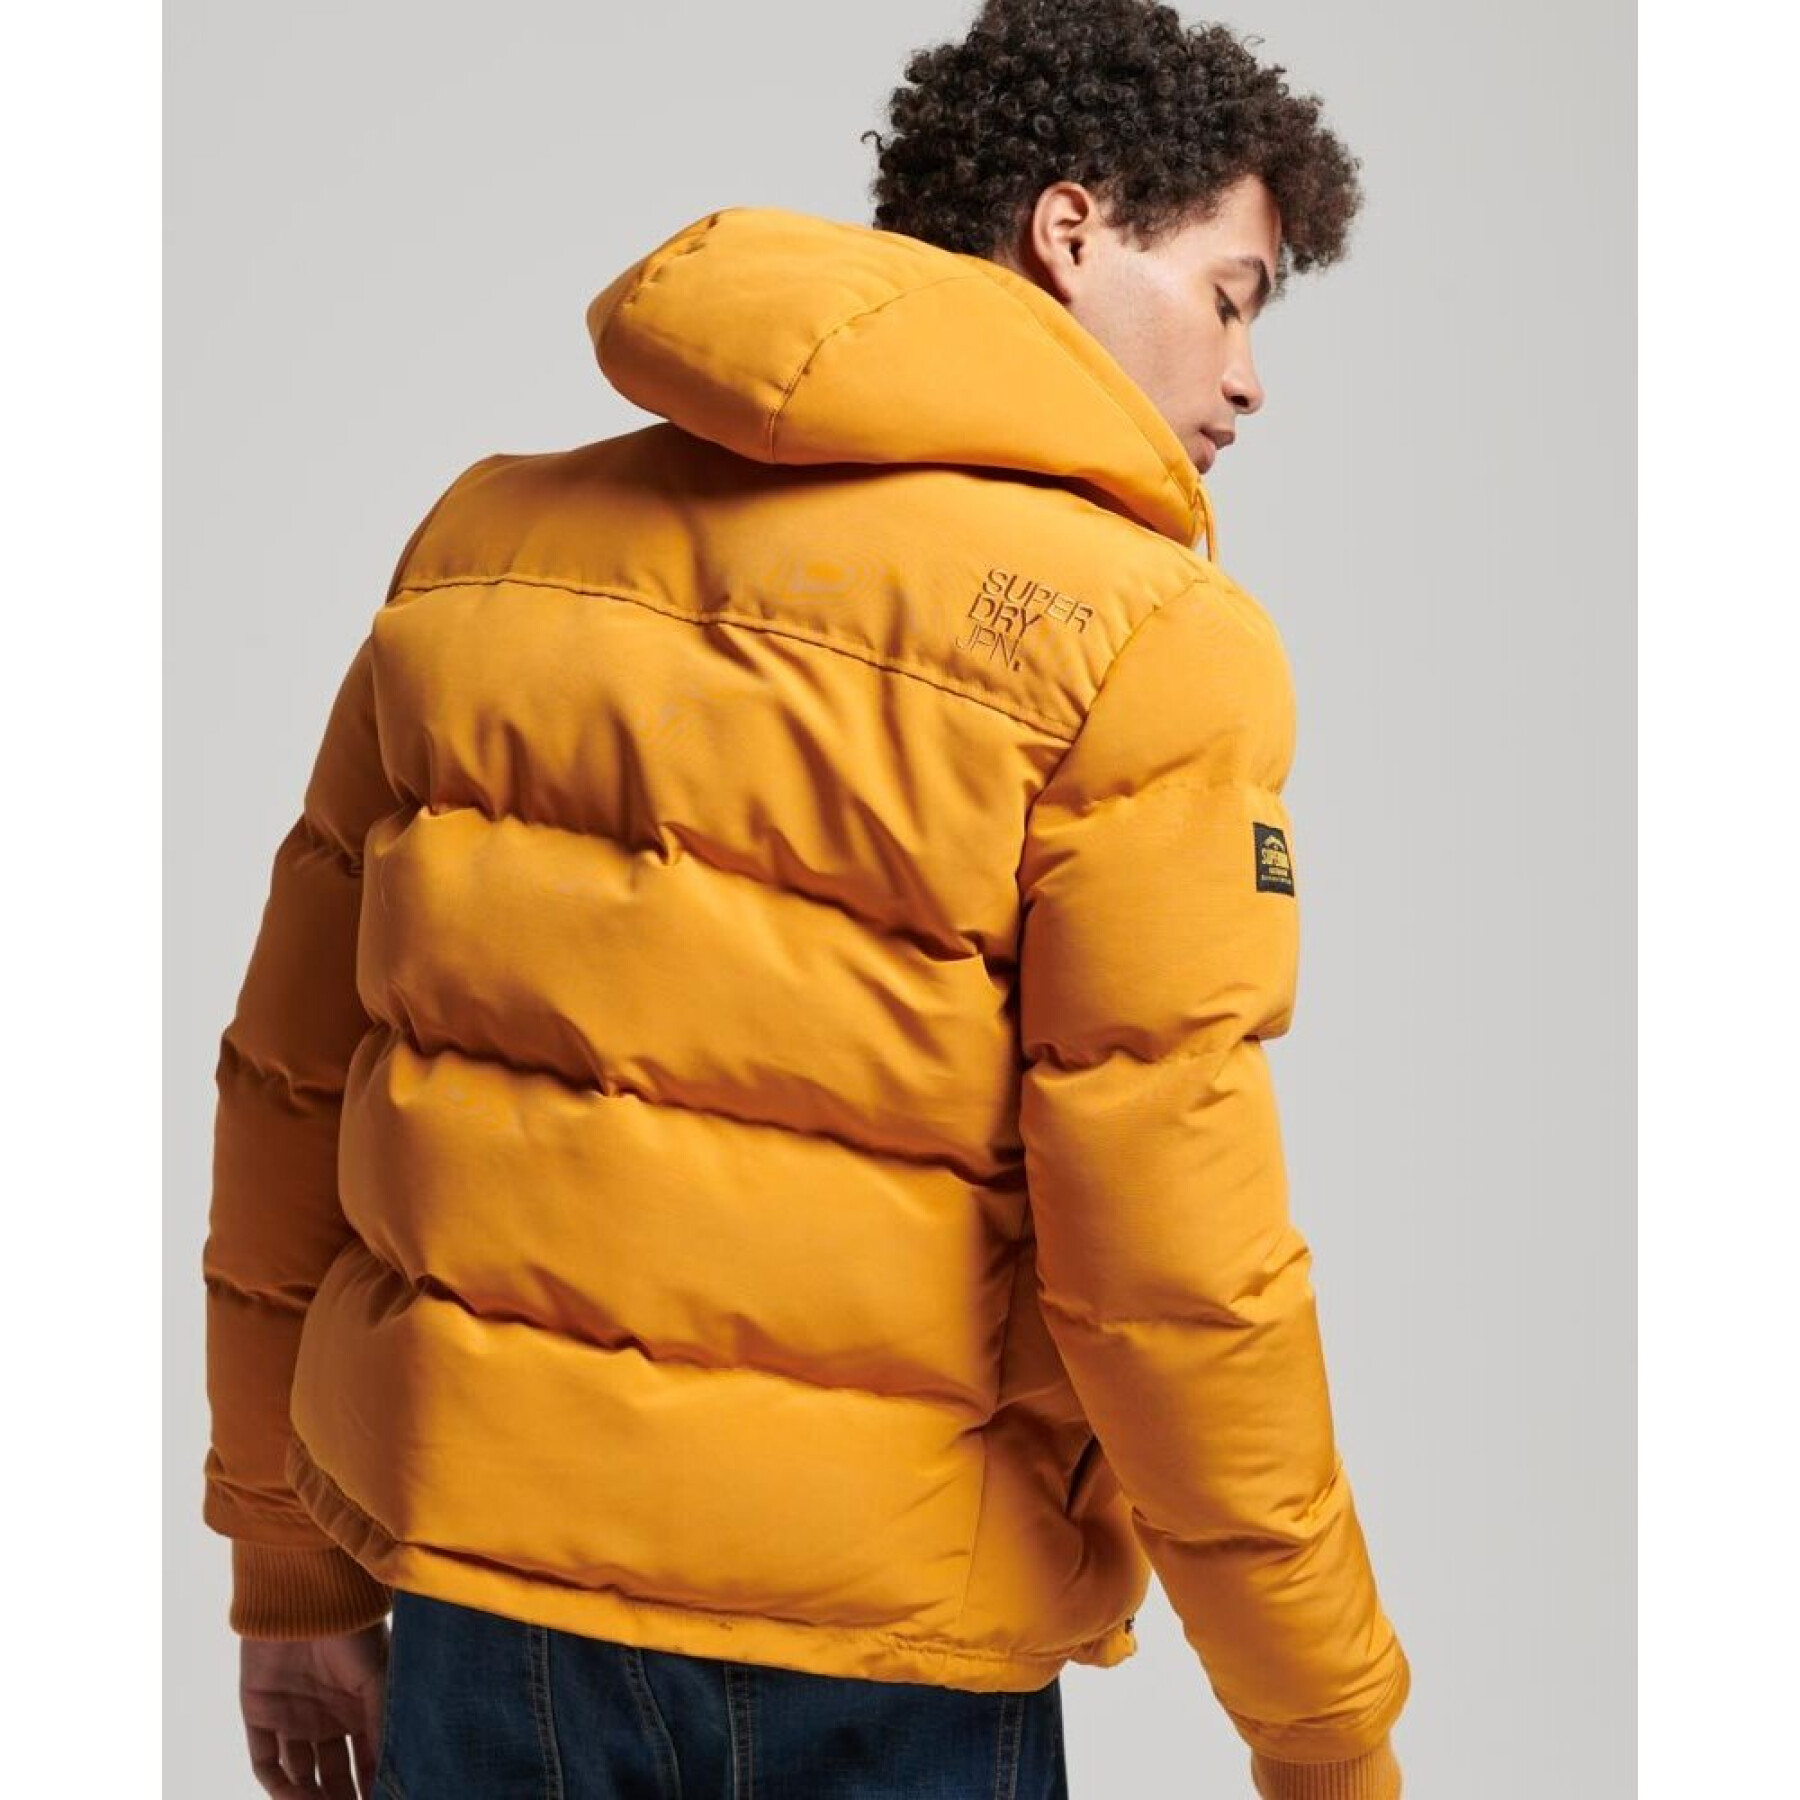 Hooded jacket Superdry Everest